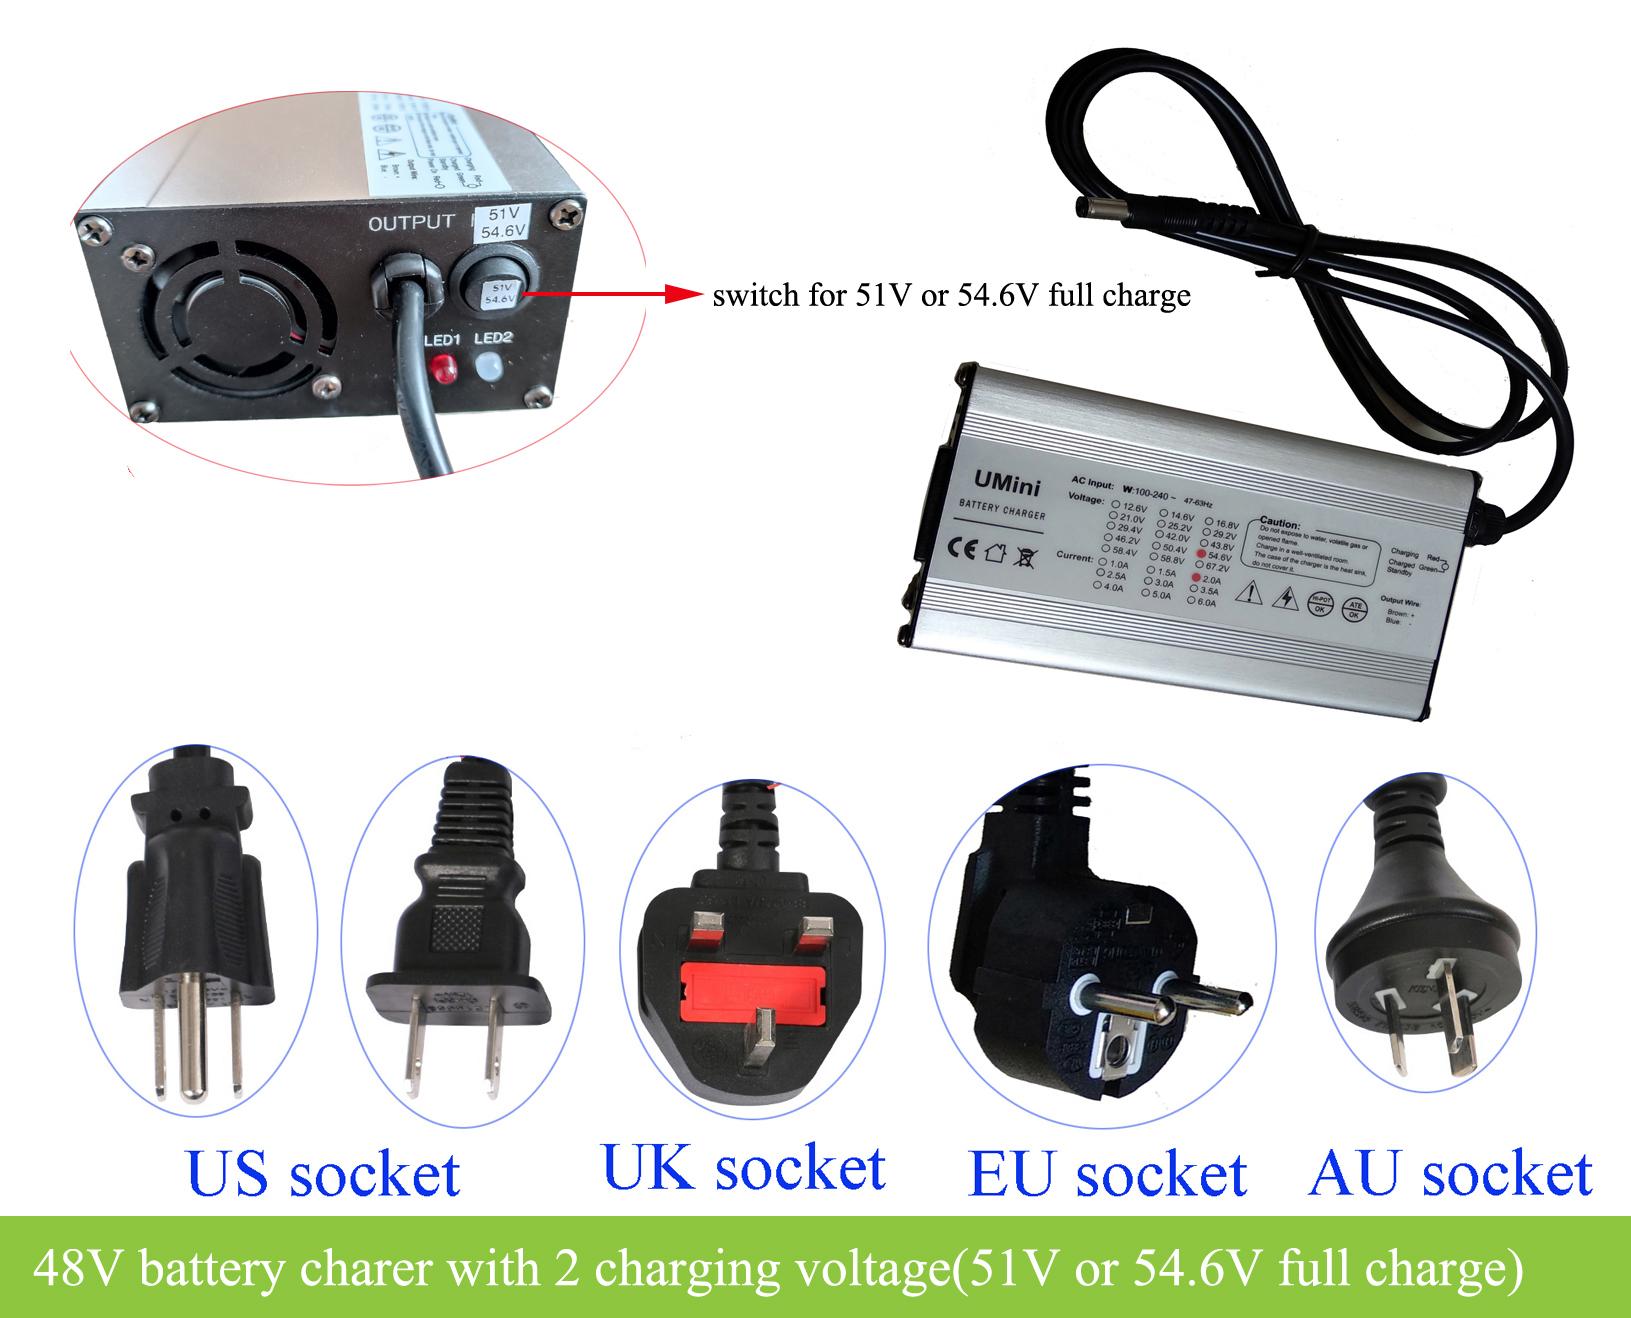 36V 48V 52V battery charger with 2 charging voltages -GreenBikeKit BBS, ebike  batteries, Bafang M620, Bafang M600, Bafang M500, Bafang M510, KT controller  with display